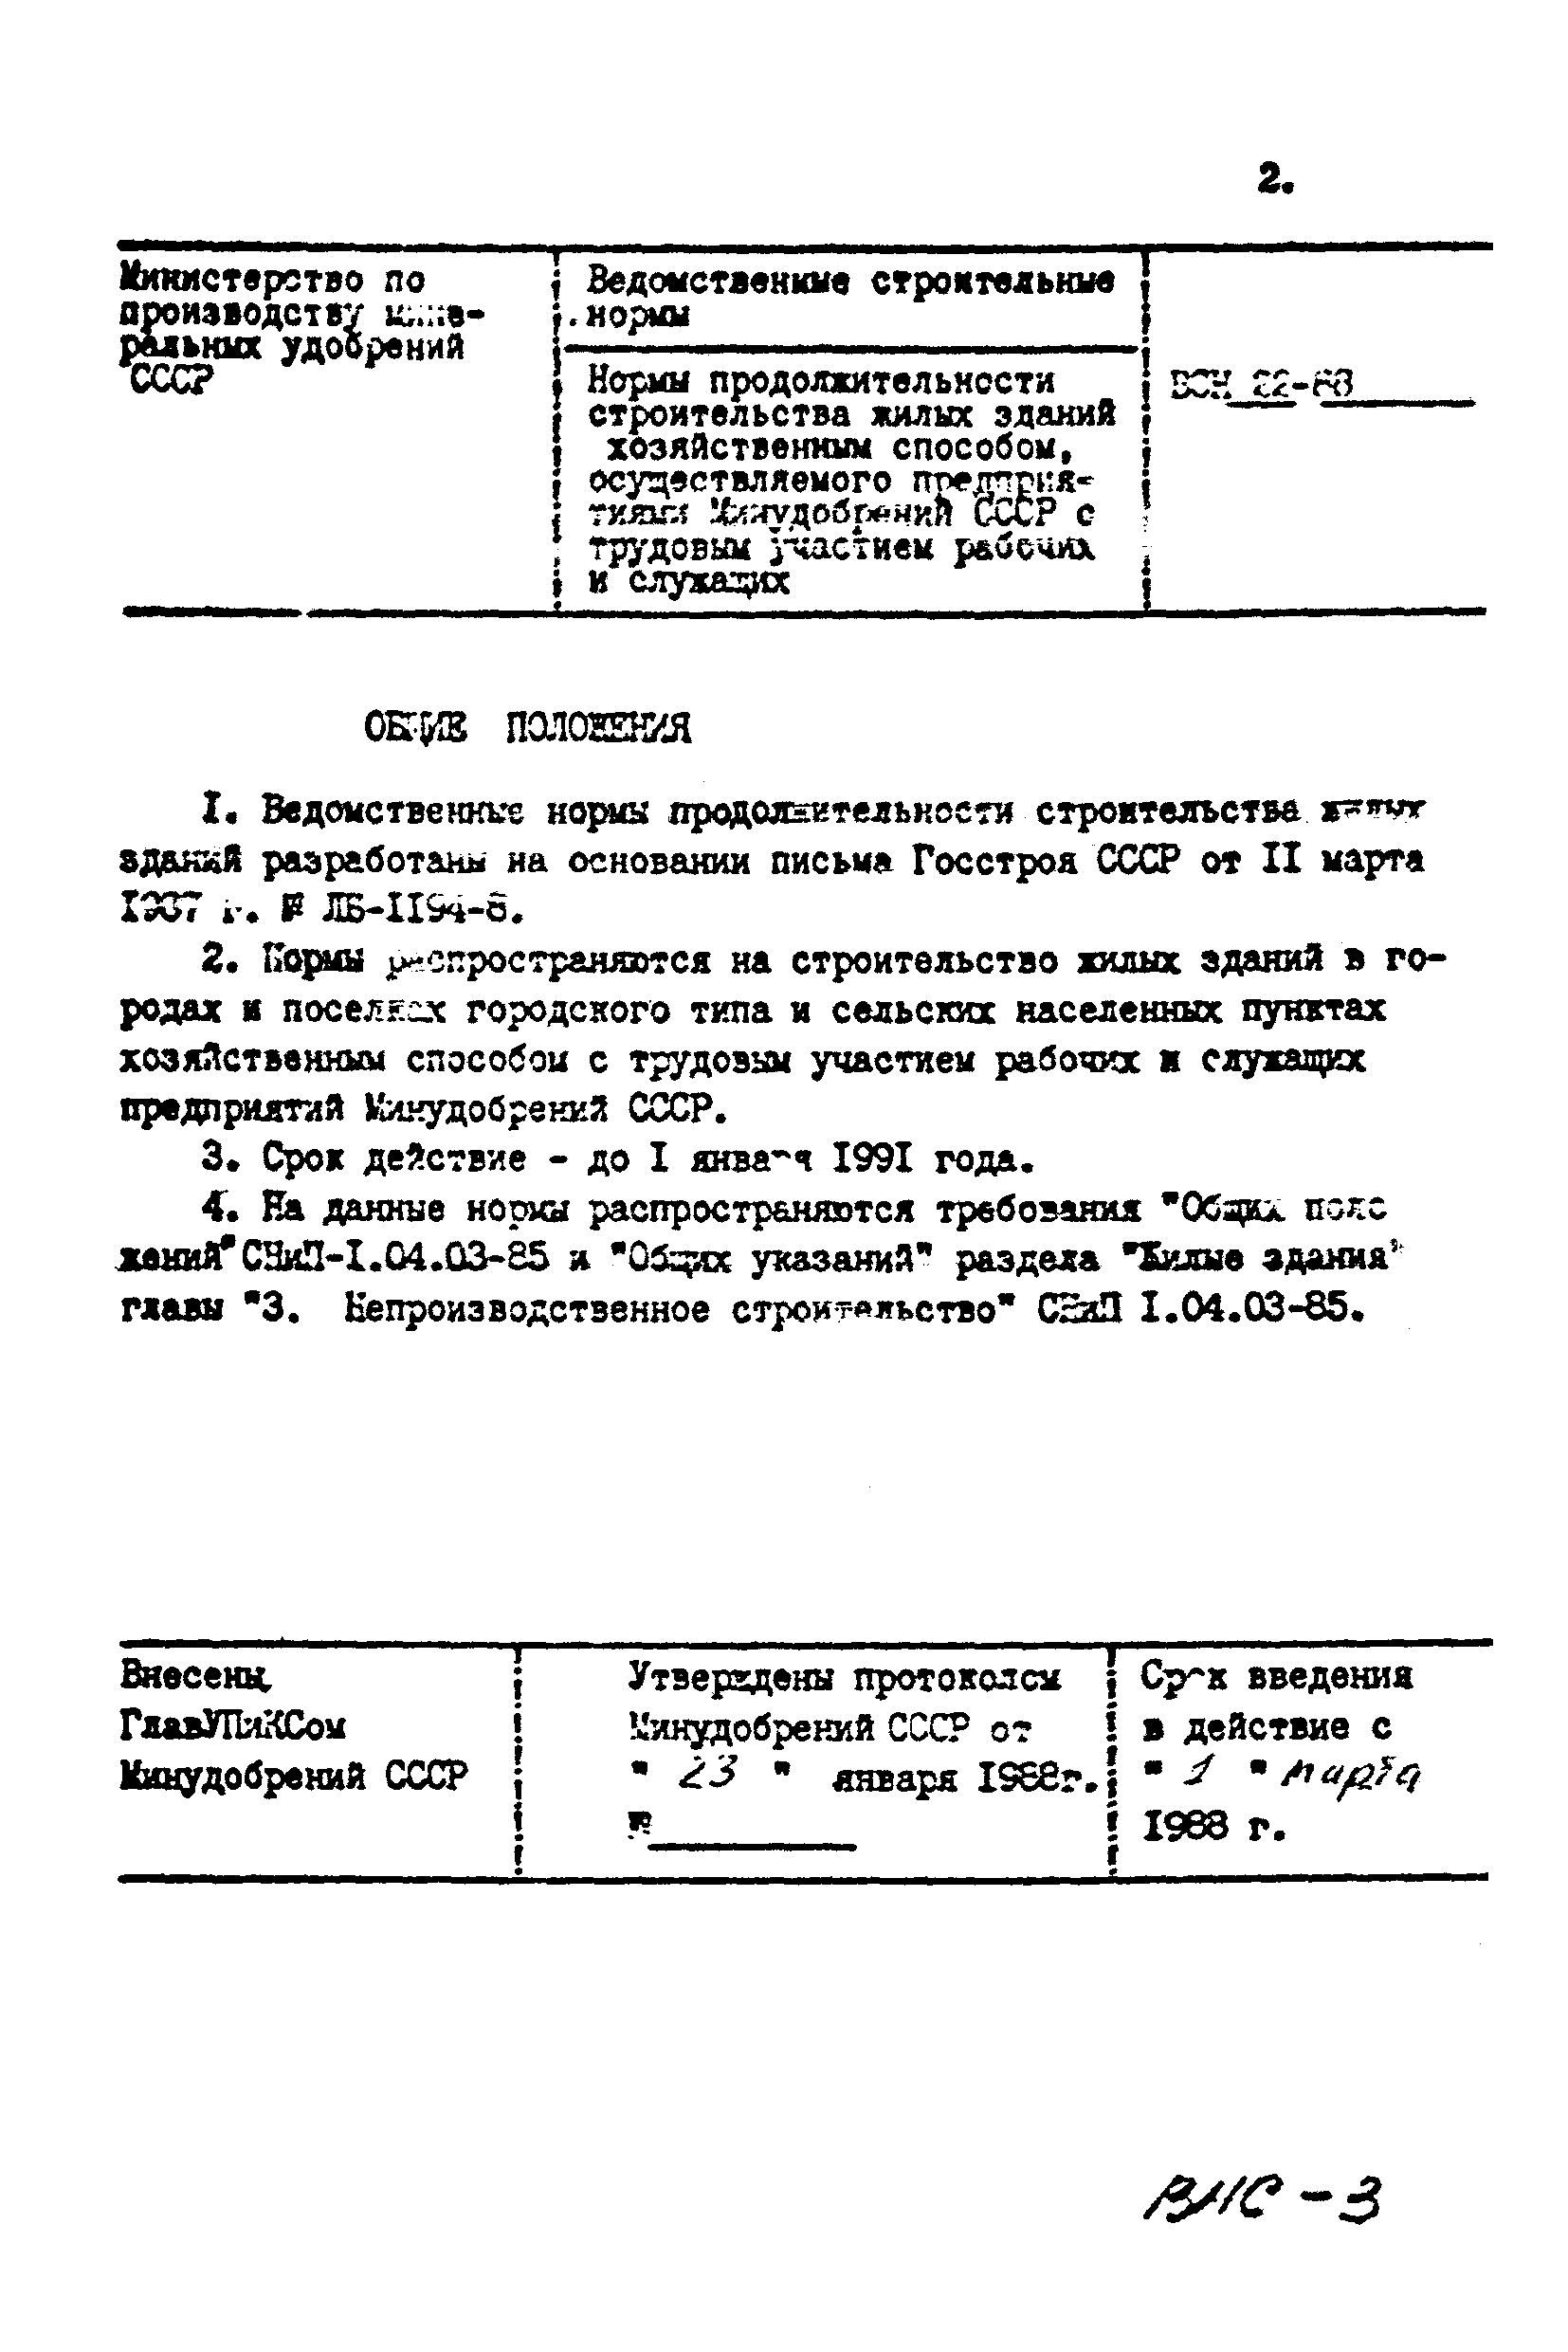 ВСН 27-88/Минудобрений СССР